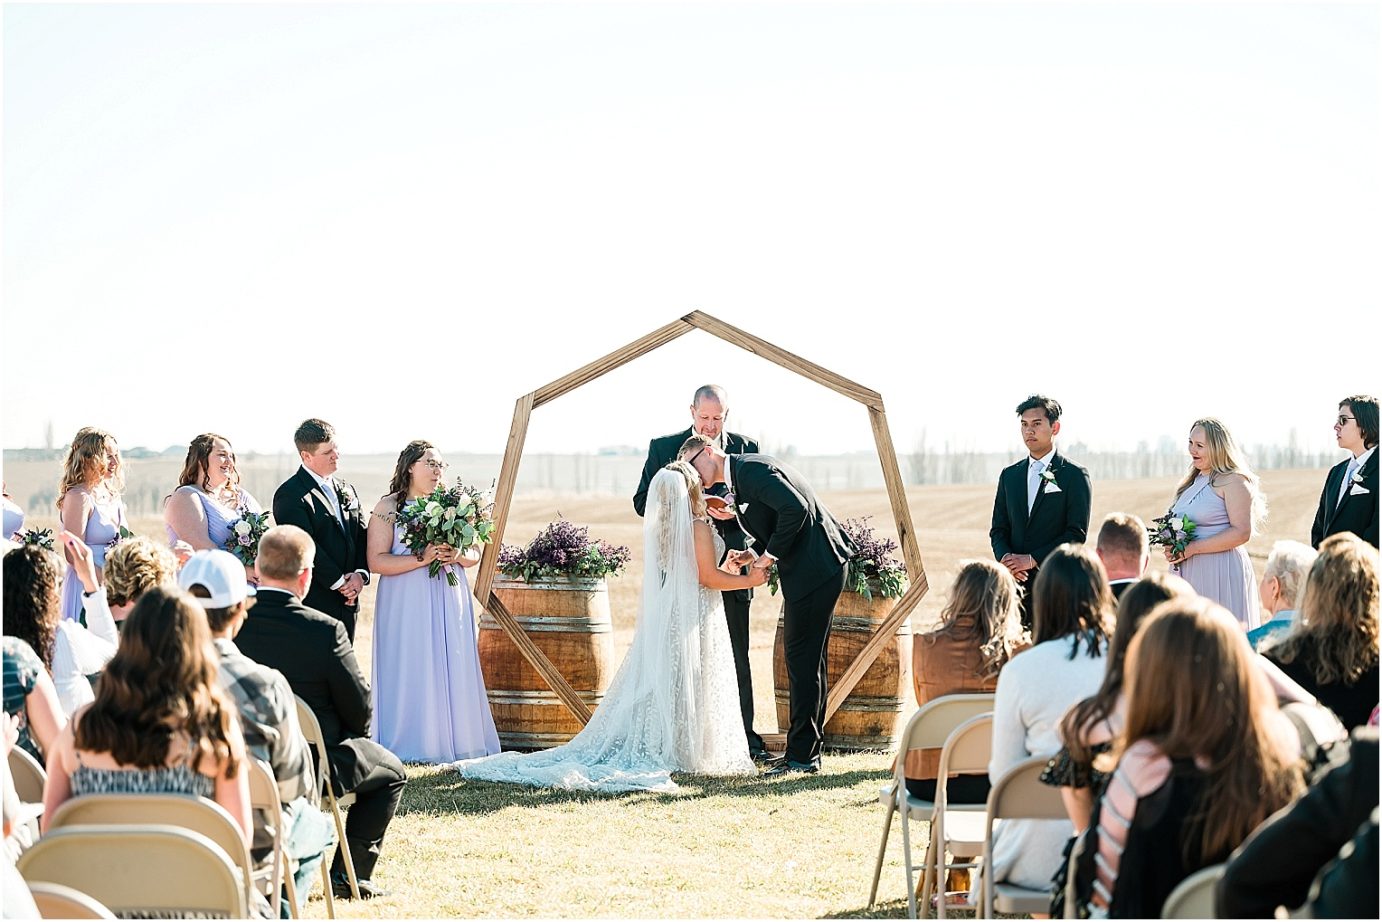 Tin Roof Venue Wedding Moses Lake Dakota and Madisyn ceremony